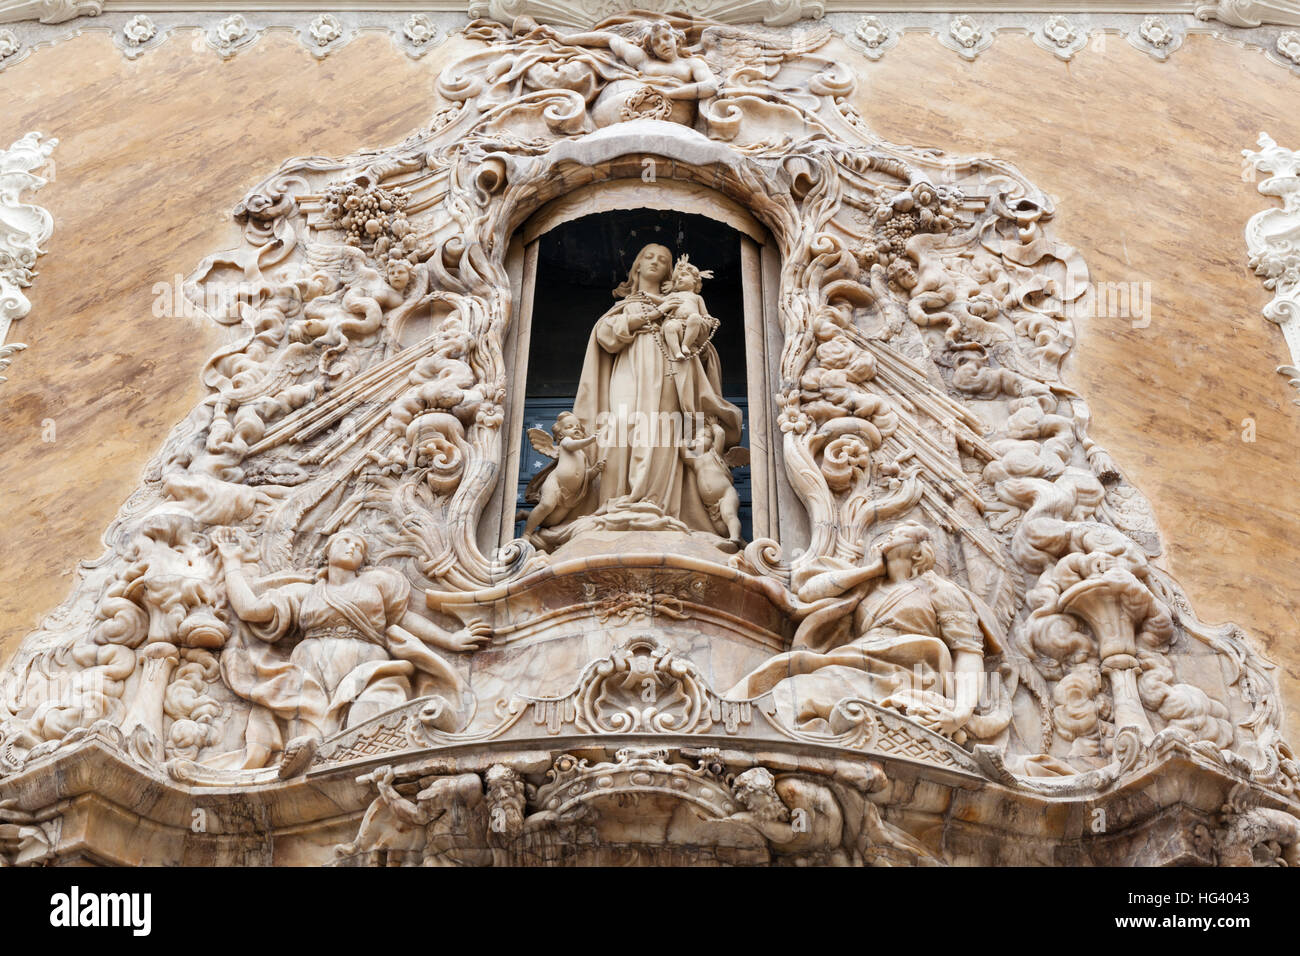 La Virgen del Rosario, enfermé dans une niche, Musée National de la céramique et des Arts Décoratifs, Valencia, Espagne Banque D'Images